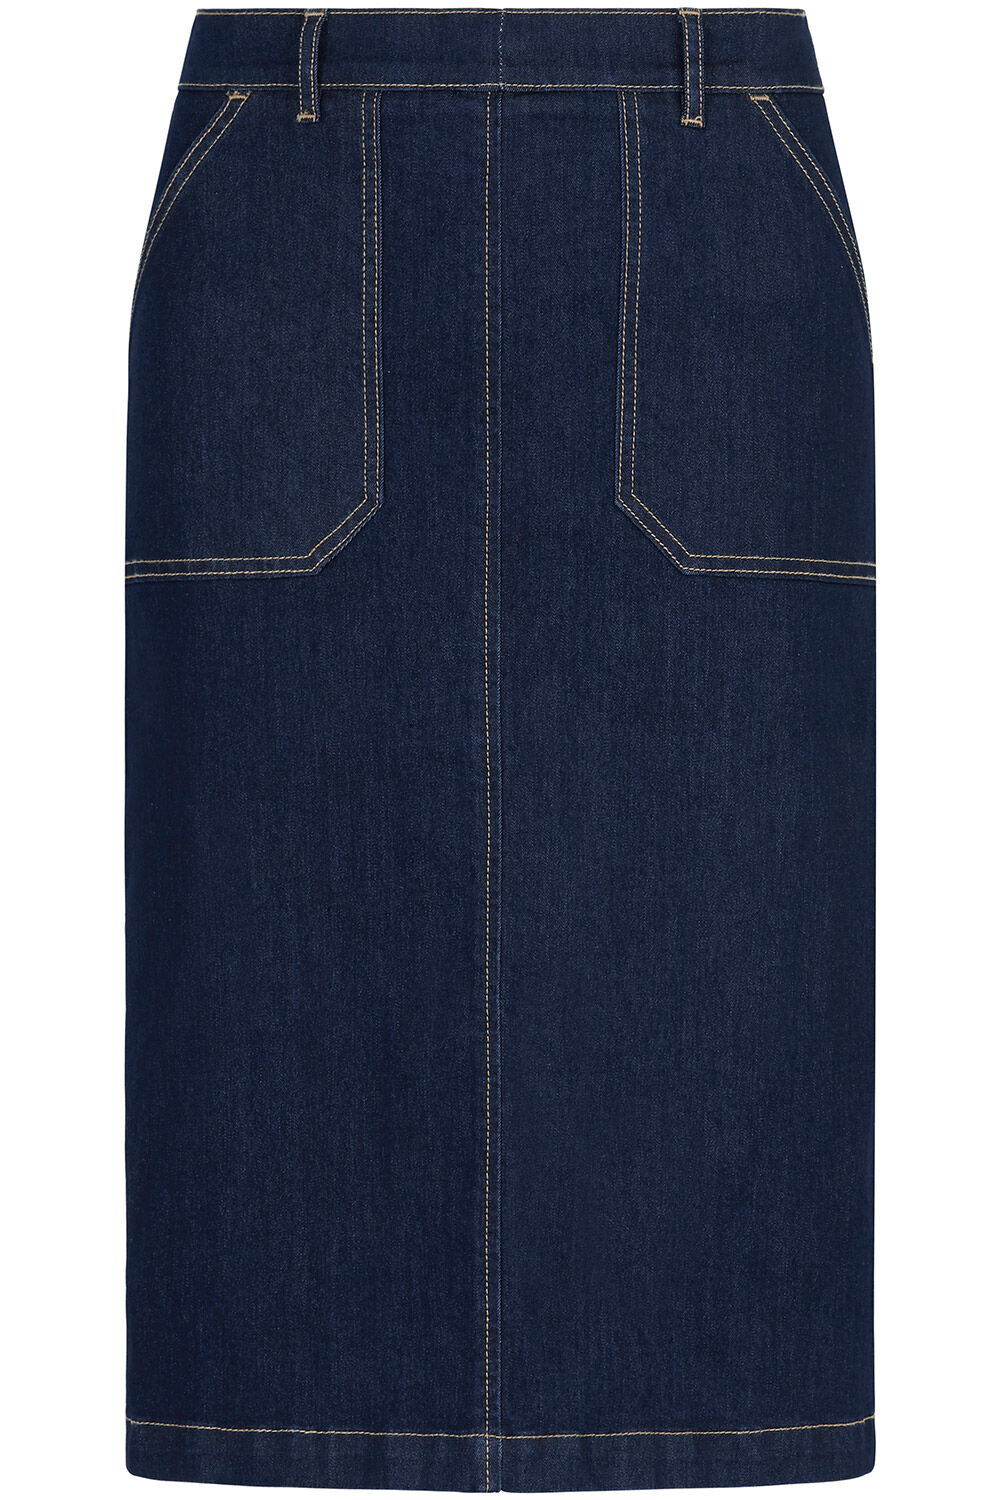 Veronica Beard BREVES SKIRT - Denim skirt - blue denim - Zalando.co.uk